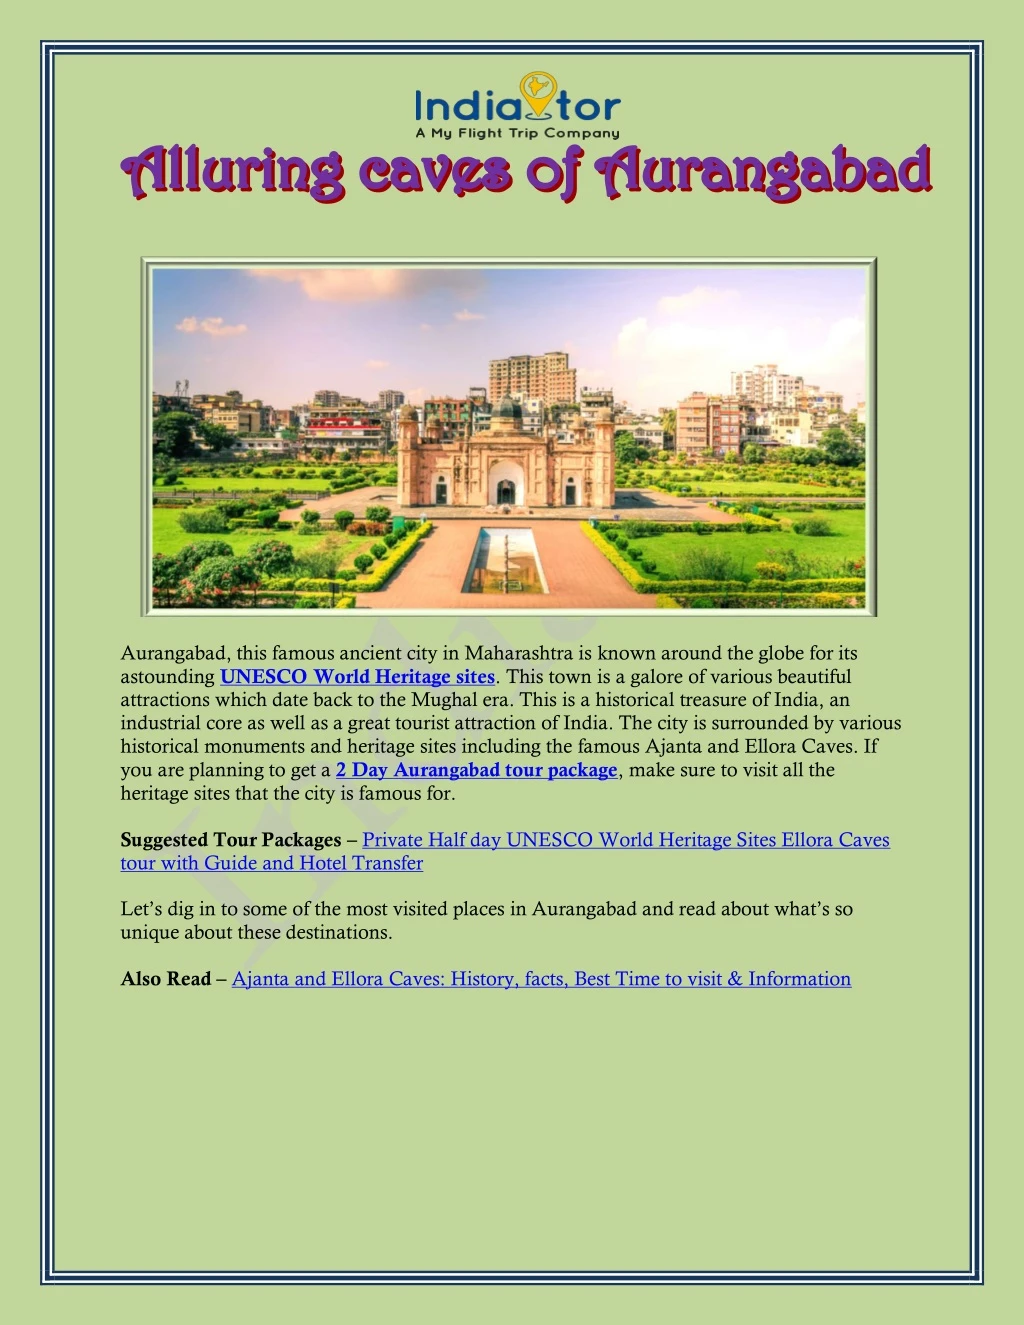 aurangabad this famous ancient city